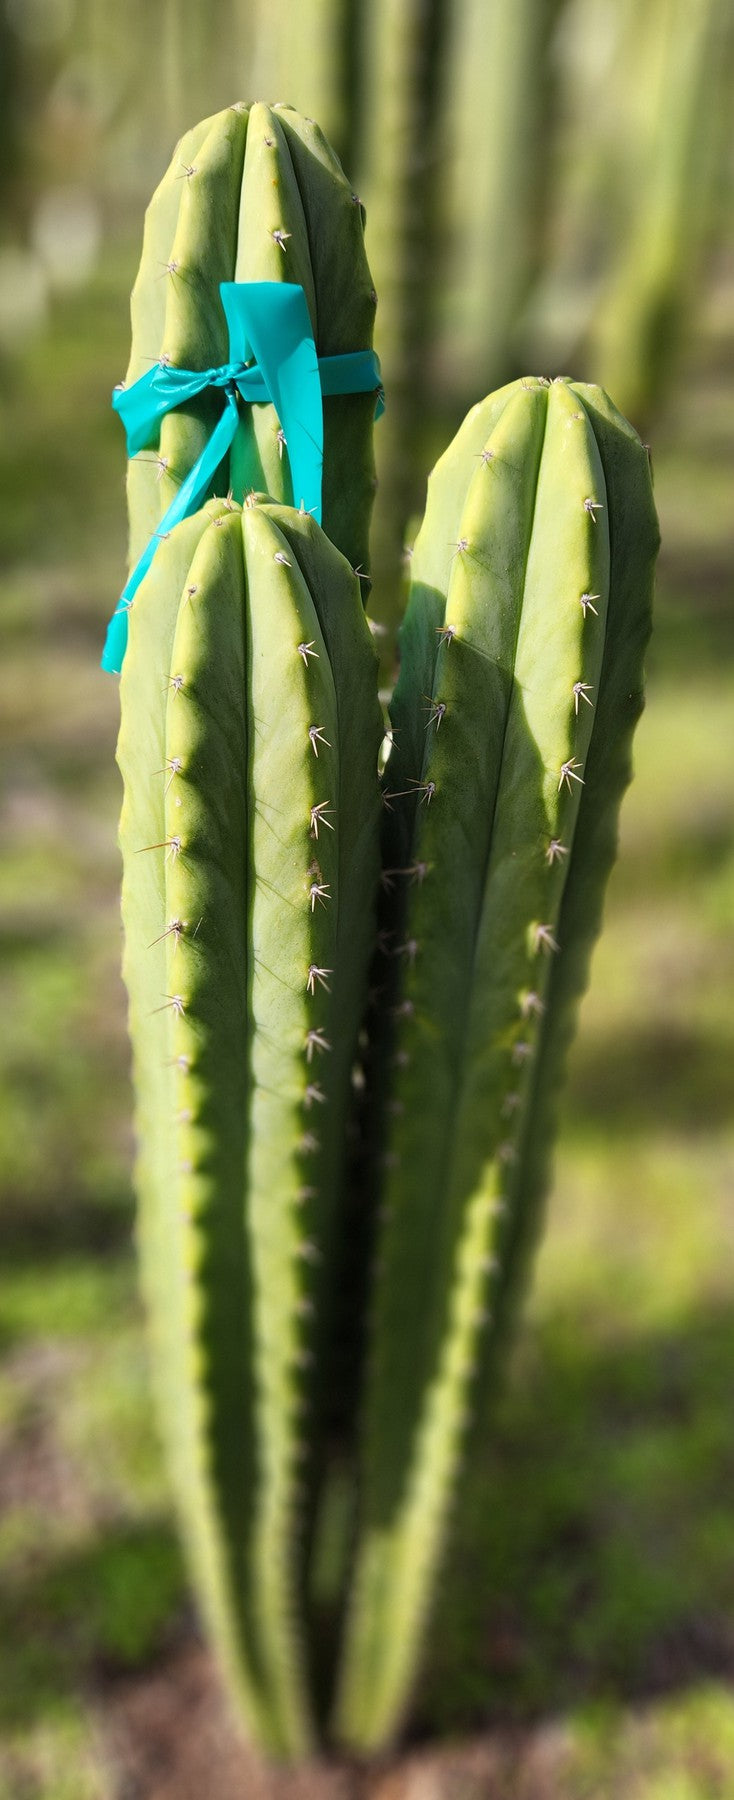 #EC311 EXACT Trichocereus Huanucabamba X Pach Oscar Cactus Cutting 10-12"-Cactus - Large - Exact-The Succulent Source